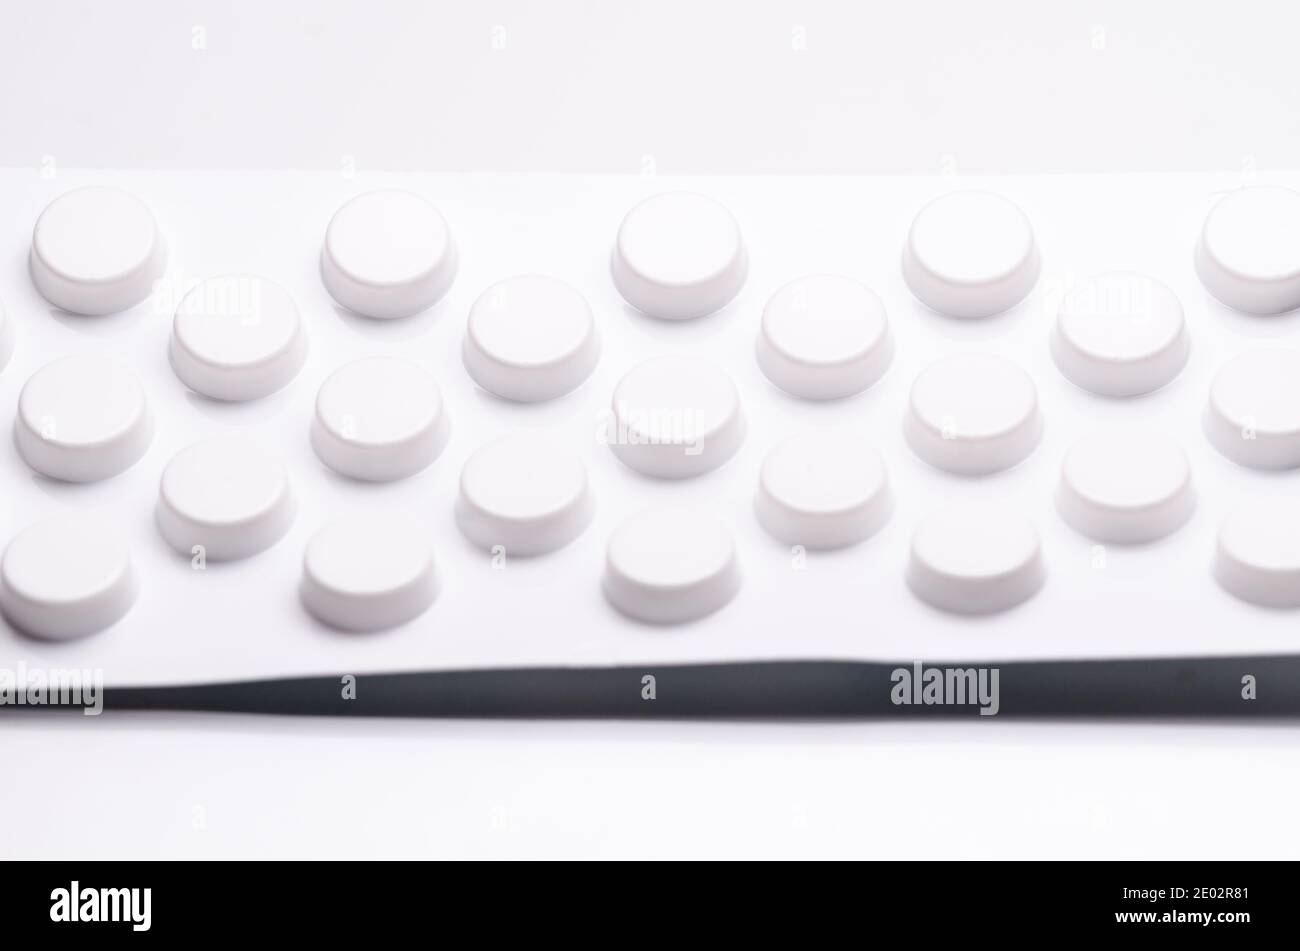 Weiße Pillen oder Tabletten auf weißem Hintergrund, Blisterpackung, Nahaufnahme Stillleben, High-Key-Beleuchtung, flach legen, Apotheke, Medikamente oder Medizin-Konzept Stockfoto